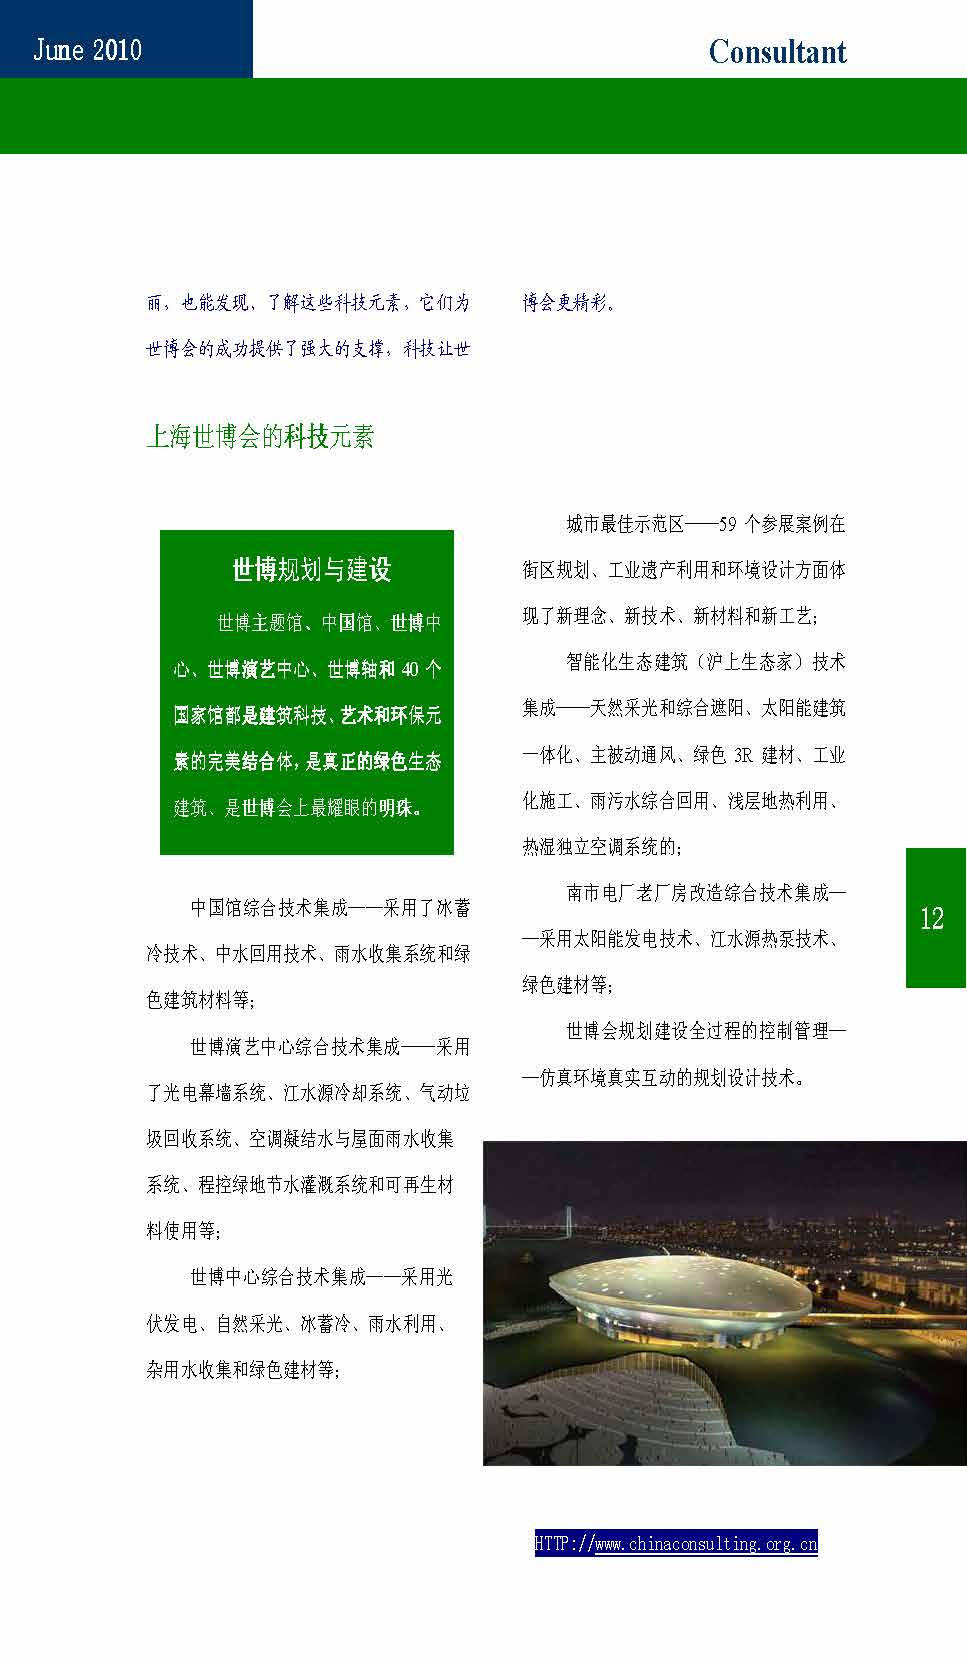 10中国科技咨询协会第十期会刊_页面_14.jpg